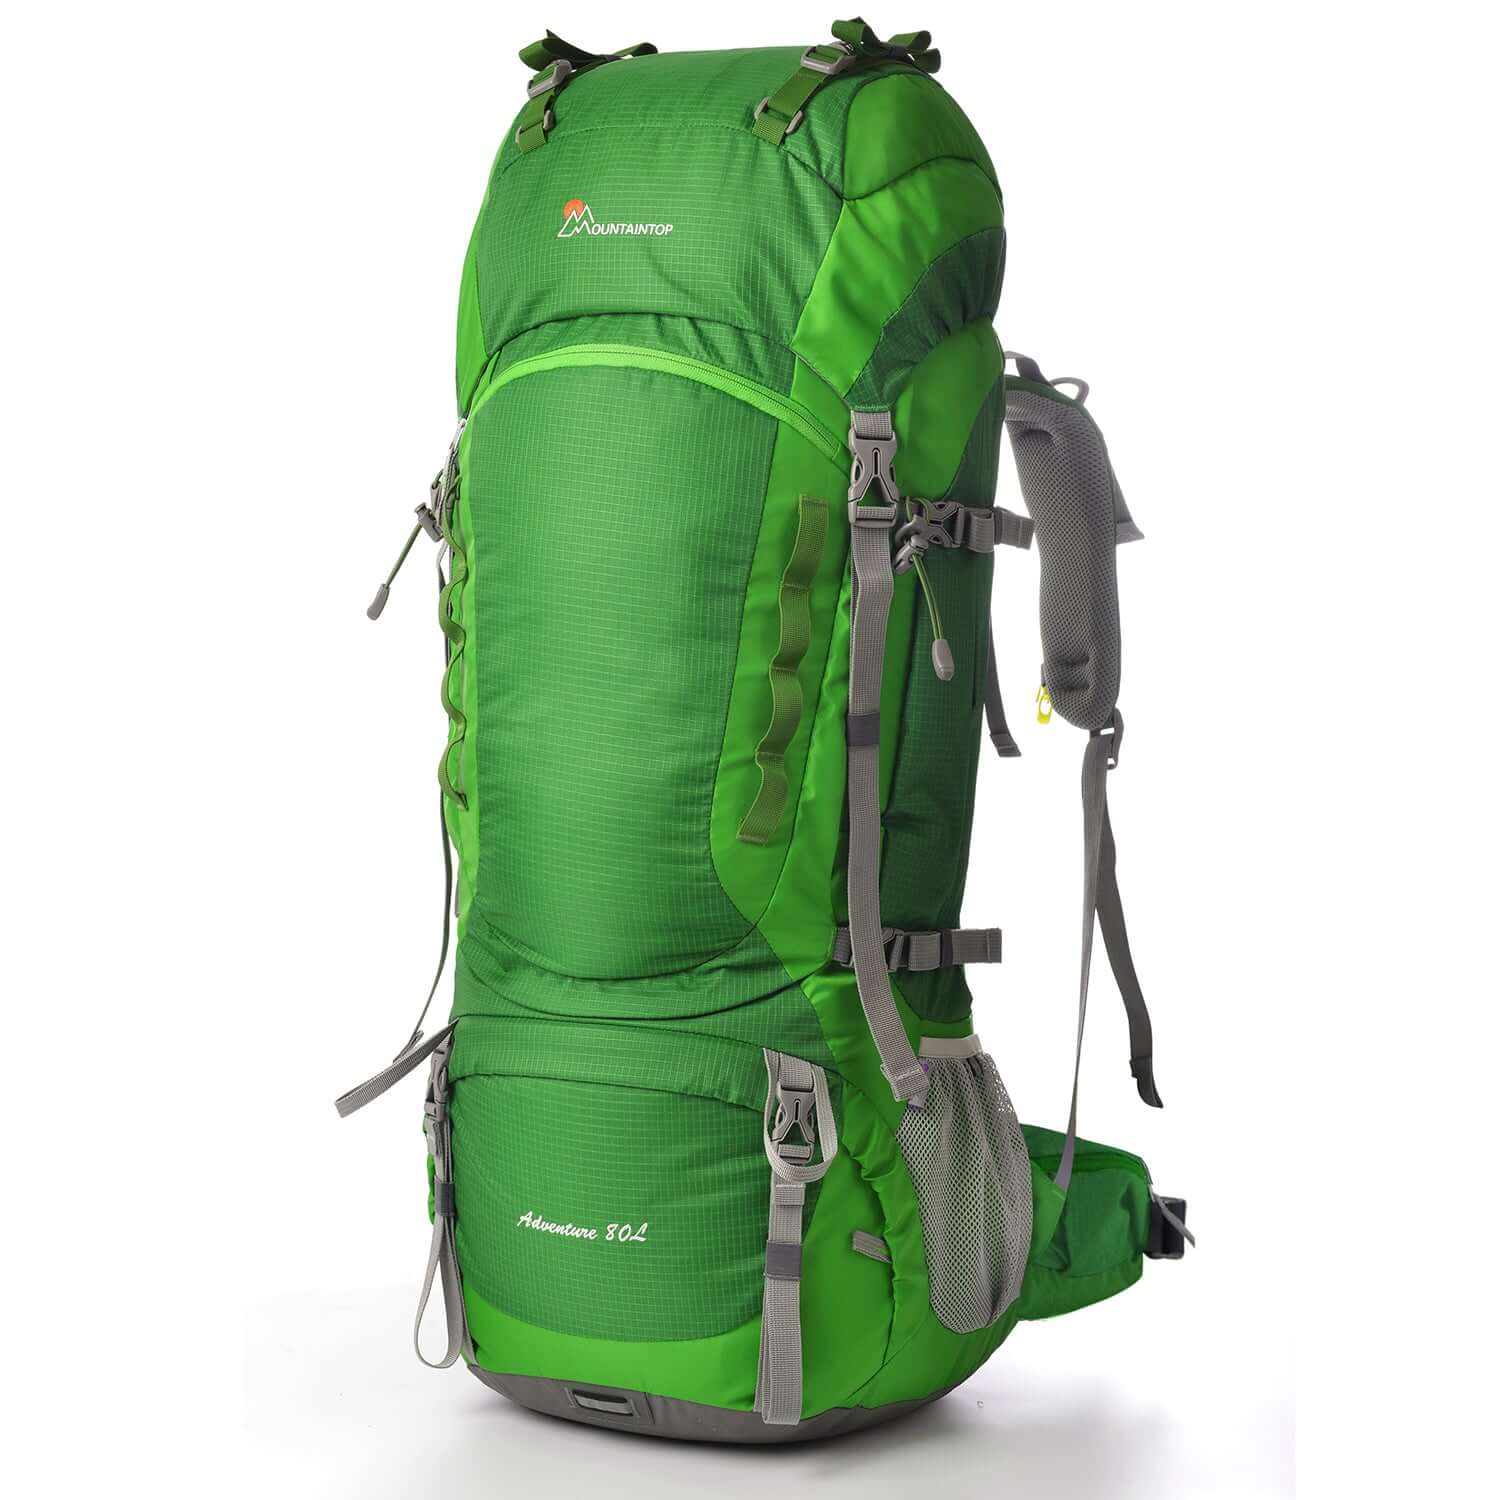 Green 80L Internal Frame Backpacks,Hiking Backpacks with Rain Cover 